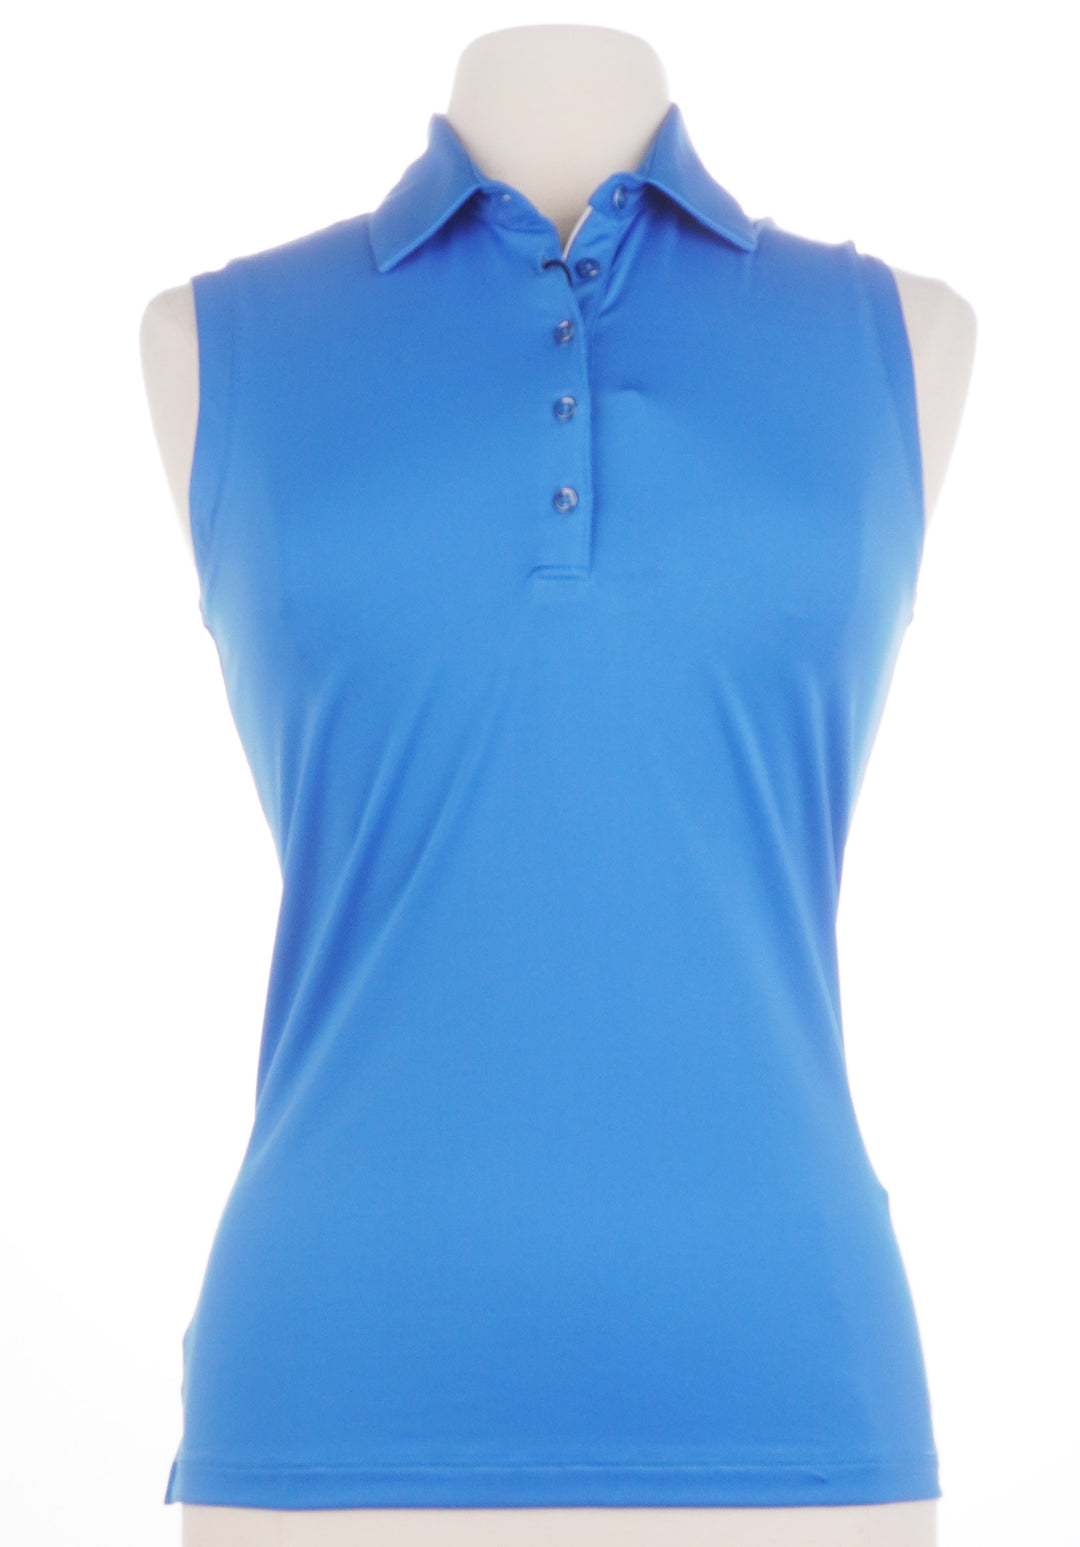 Dunning Golf Player Jersey Performance Sleeveless Top - Azure - Size Small - Skorzie